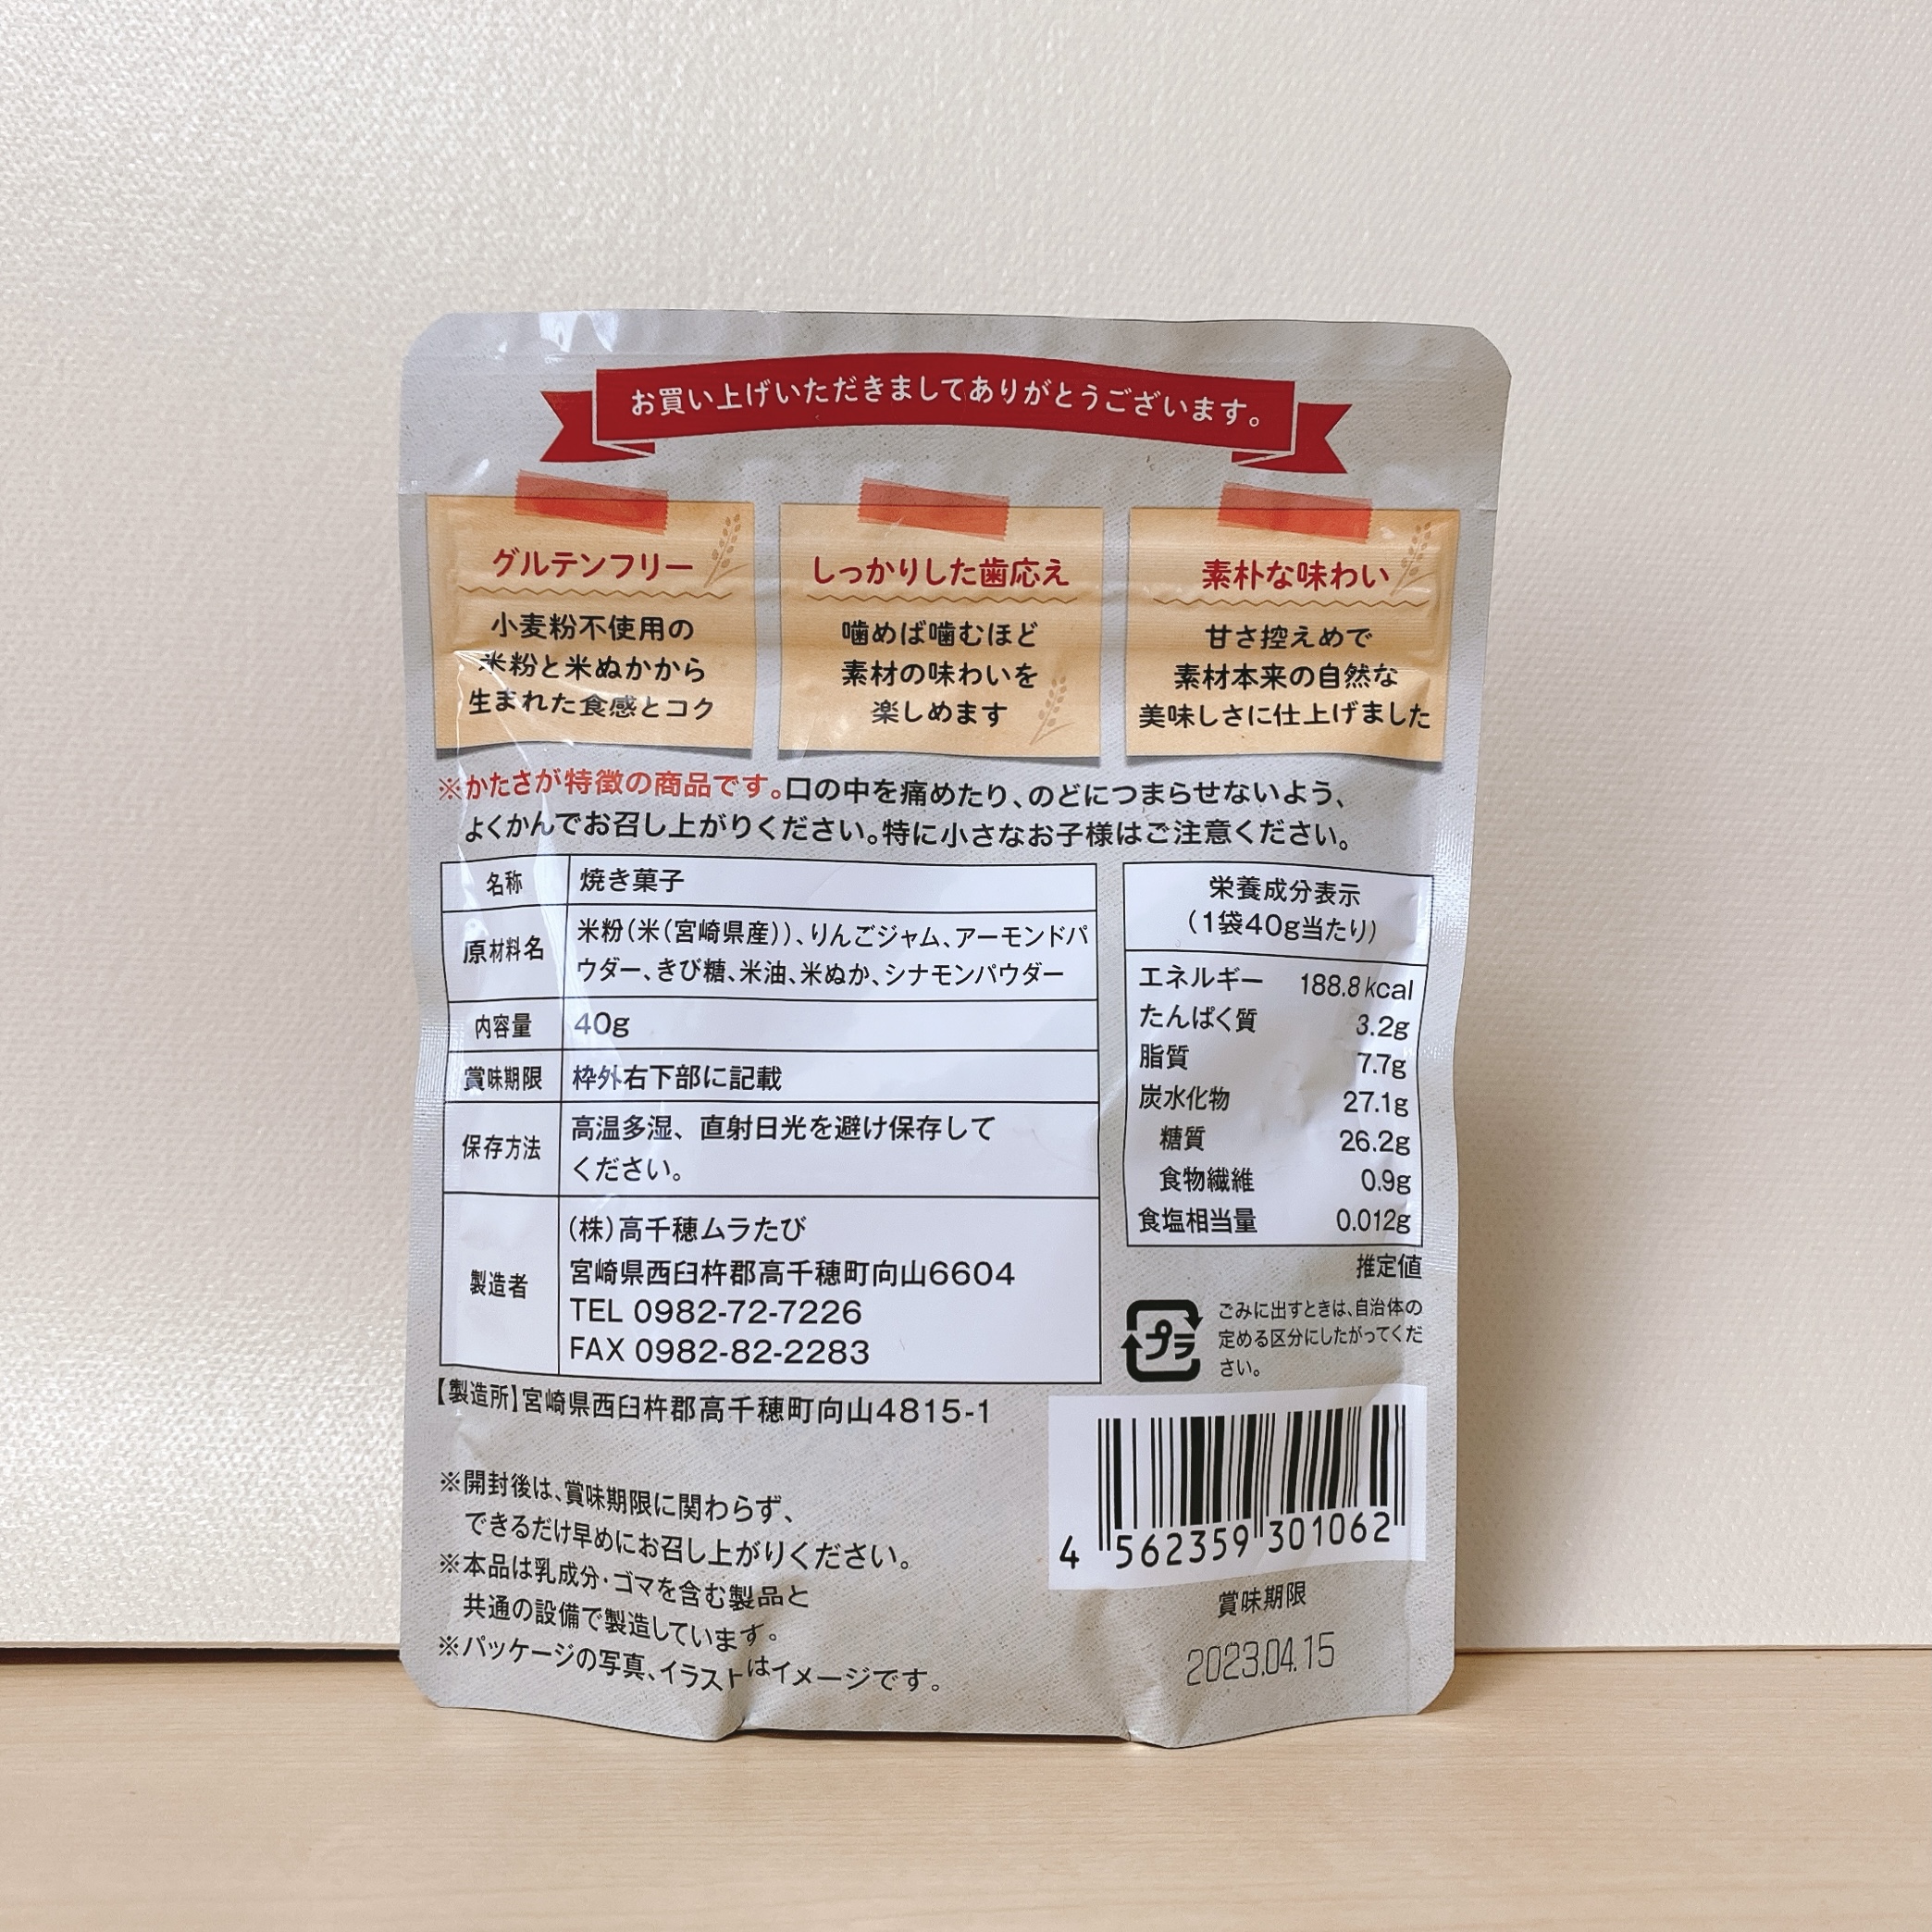 米粉と米ぬかのビスコッティ_アップル×シナモン__原材料名・栄養成分表示